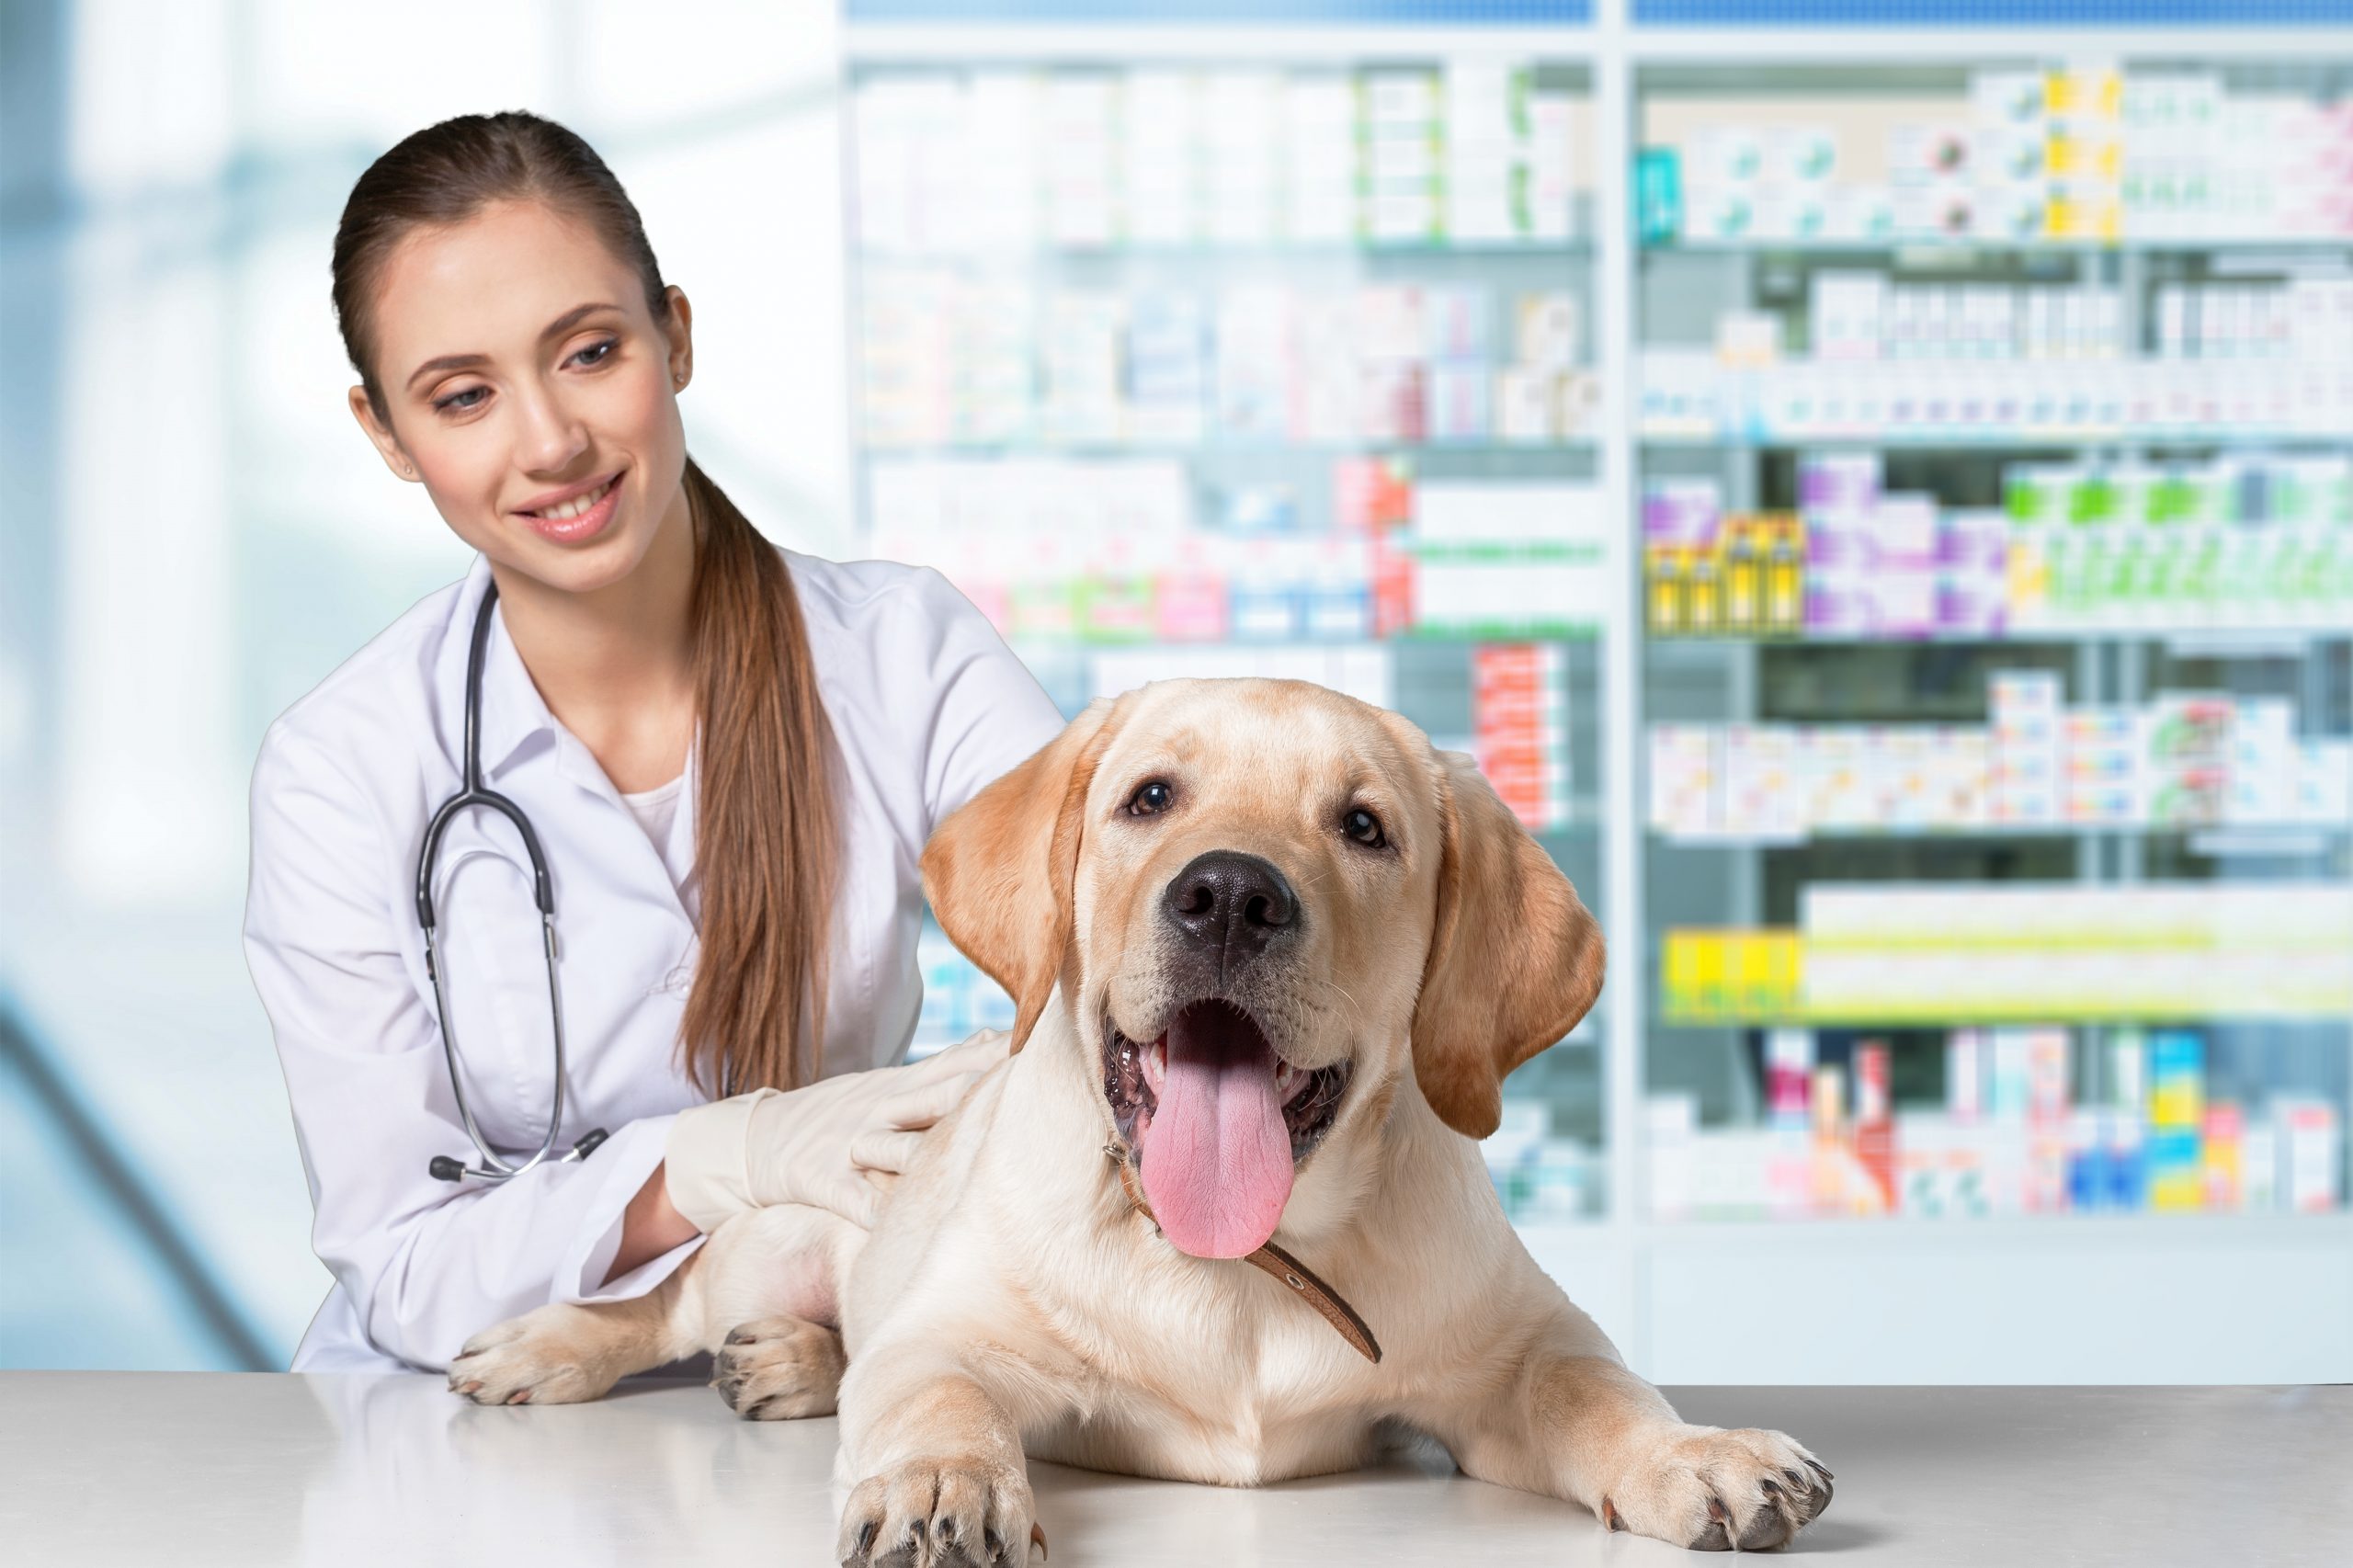 puntos clave de la comunicación en tu clínica veterinaria